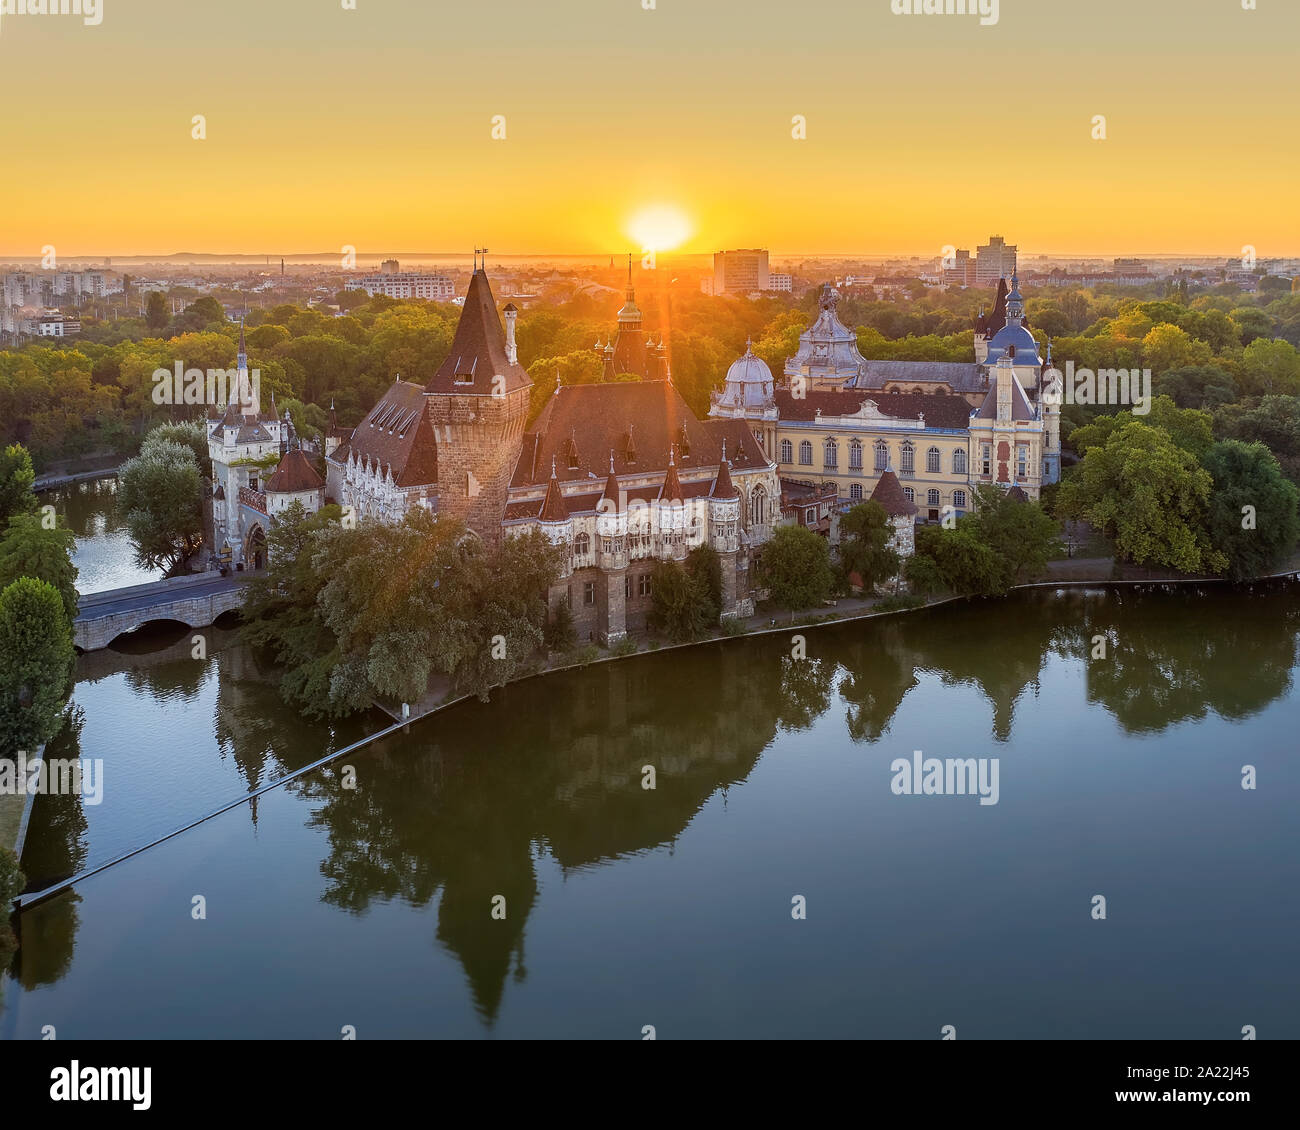 Castello di vadjahunyad nel parco della città di Budapest, in Ungheria con incredibili luci del mattino. L'Europa, Ungheria, Buedapest, Castello Vajdahunyad Foto Stock